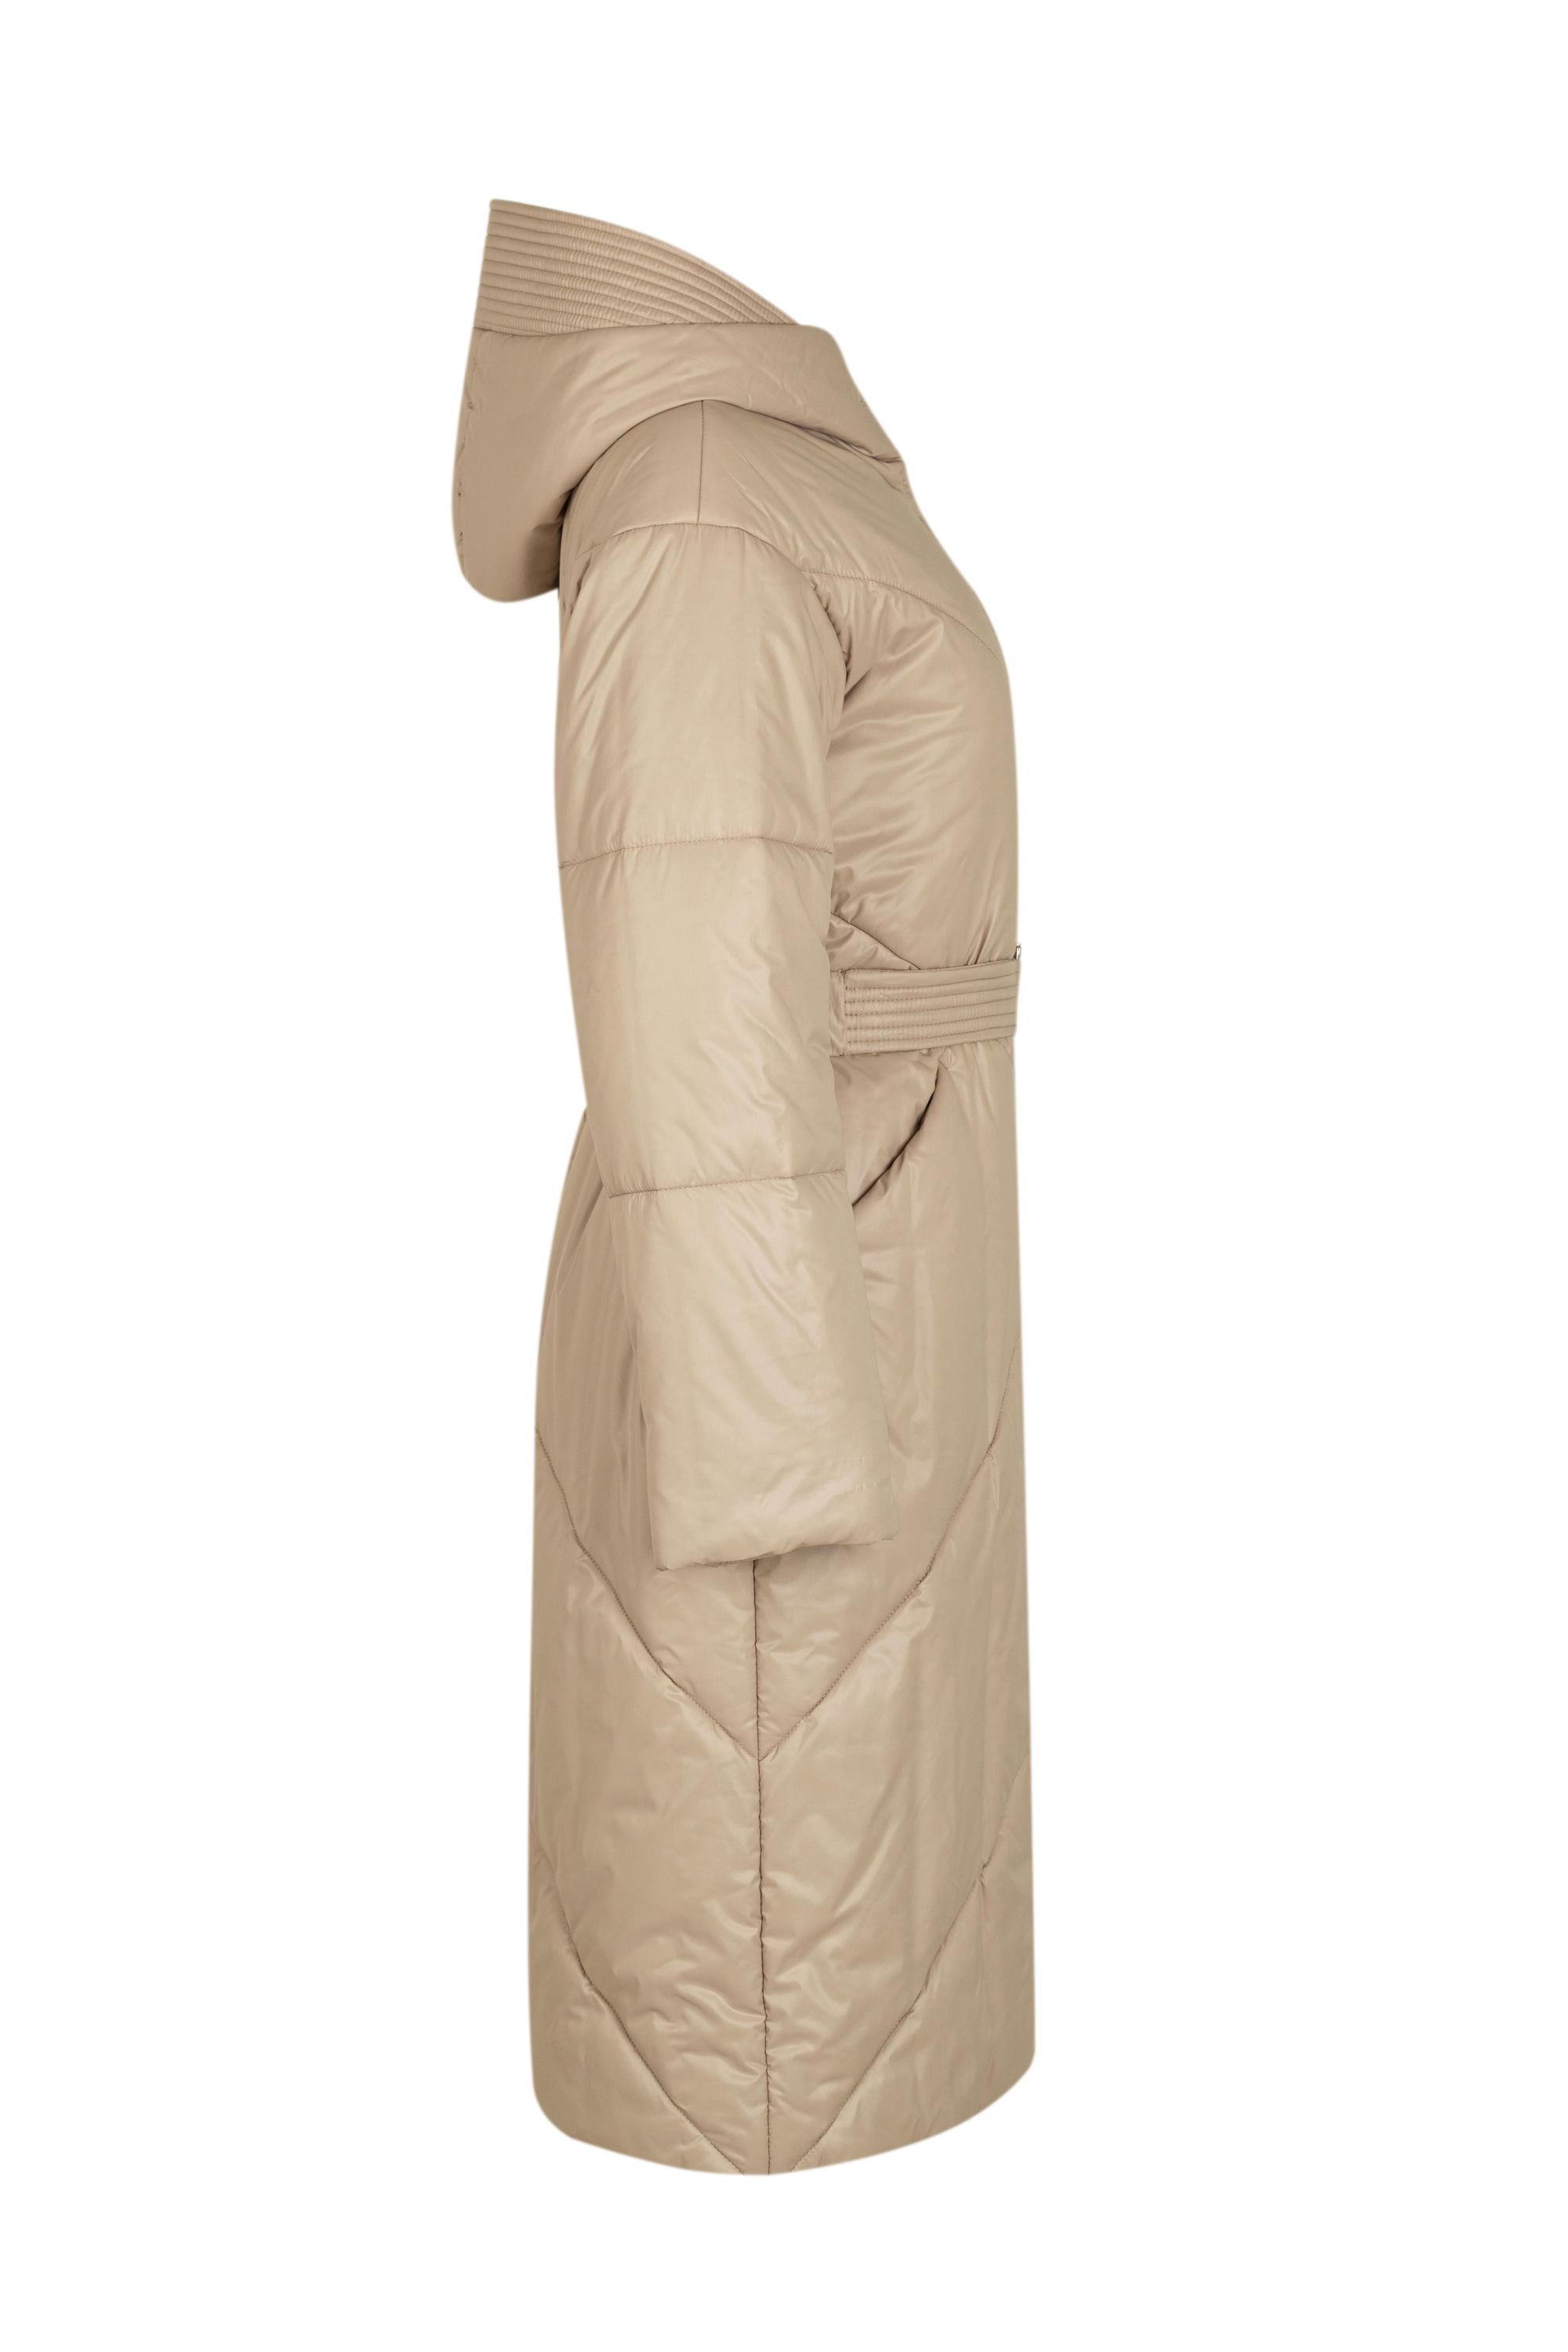 Пальто женское плащевое утепленное 5-12174-1. Фото 2.